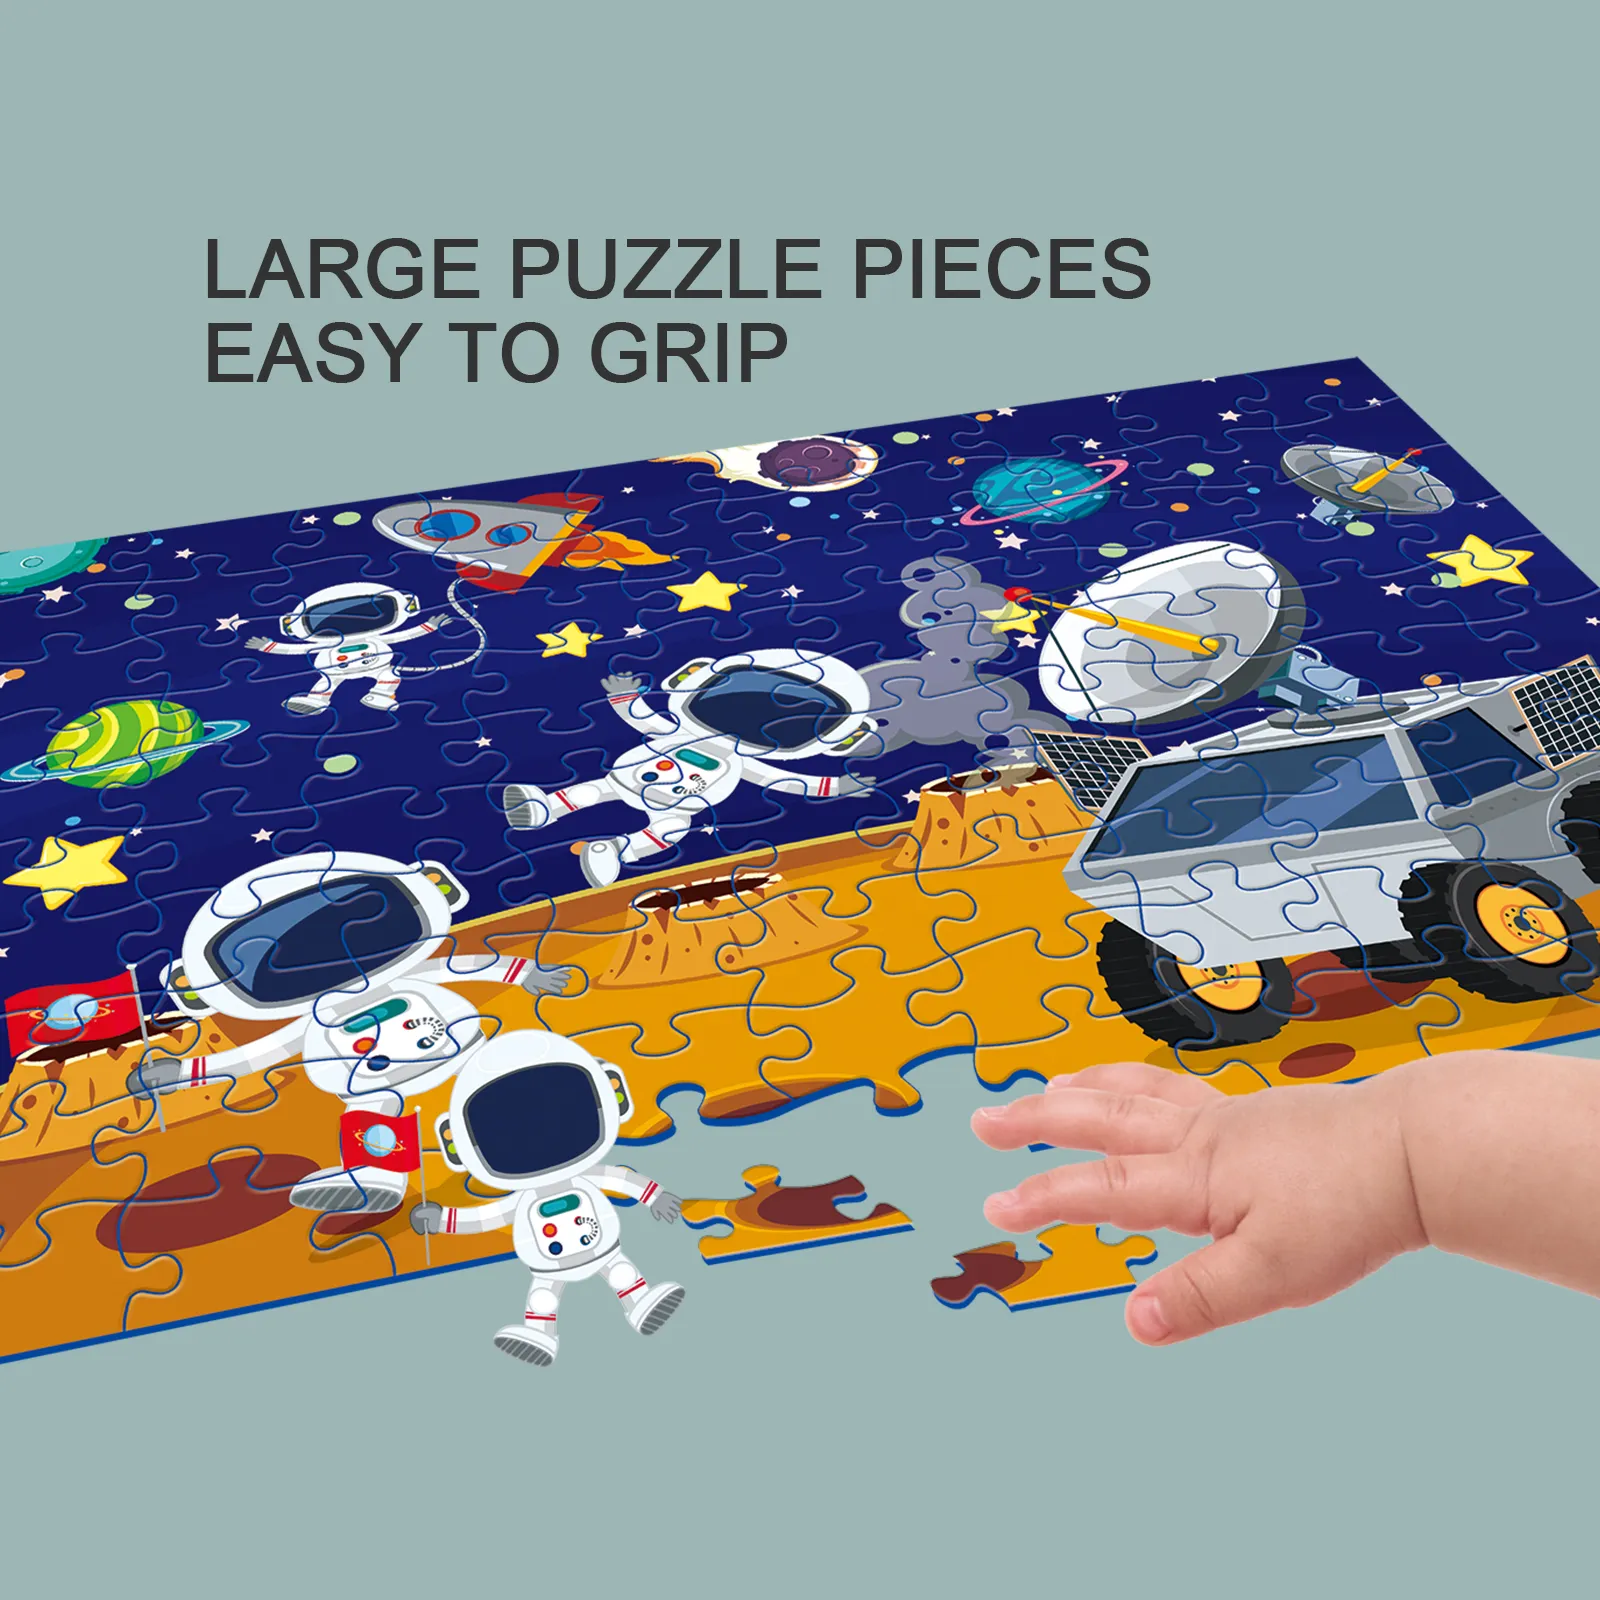 Puzzle De 100 Pièces Sur Le Thème De L’espace Pour Enfants - Grandes Pièces Pour Un Assemblage Facile